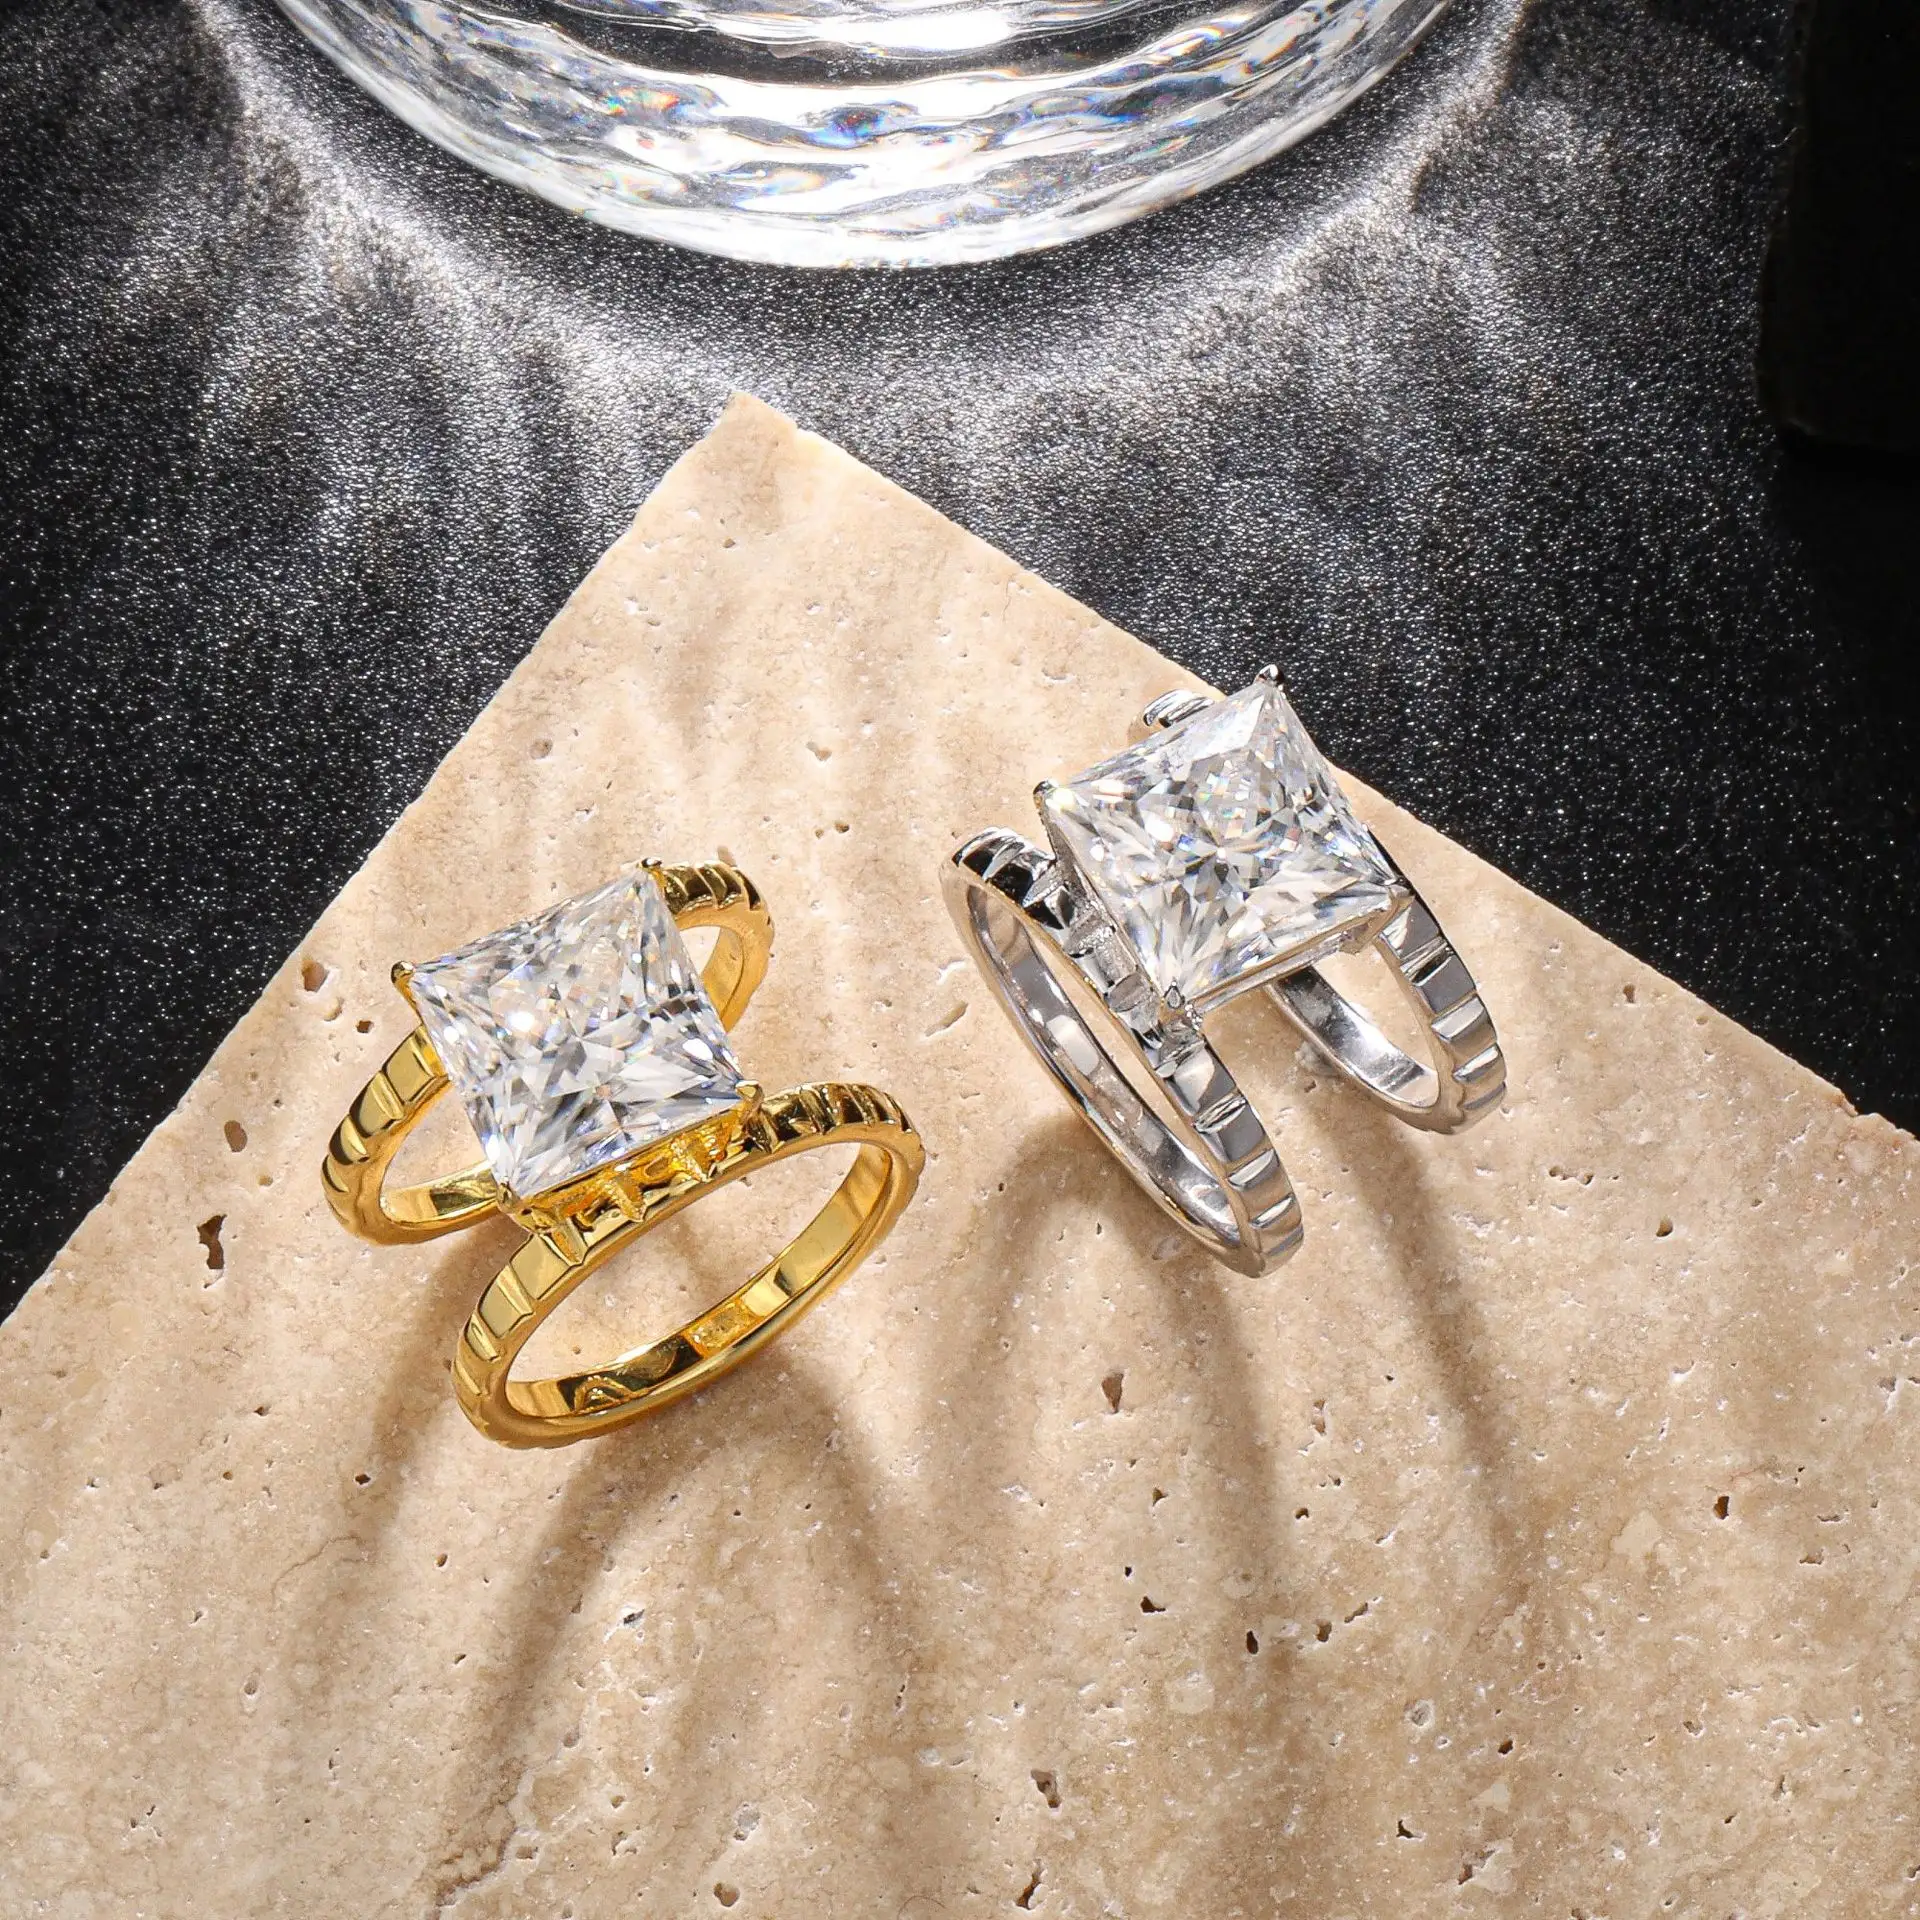 Özel 925 ayar gümüş 6CT altın kaplama 18K mozanit elmas yüzük nişan düğün gelin güzel takı kadınlar için adam